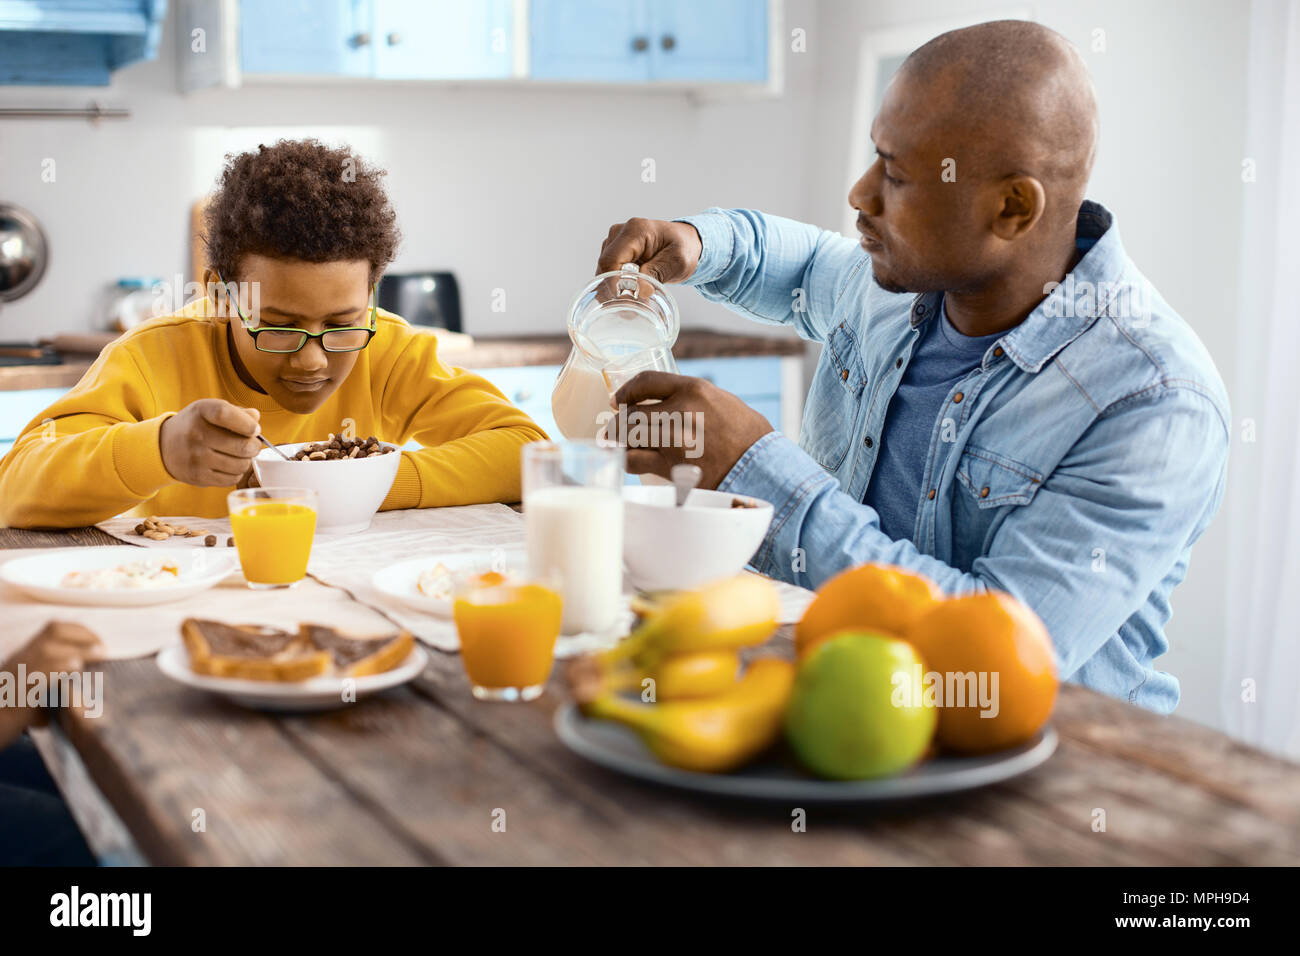 Agréable jeune homme verser le lait, tout en fils de manger les céréales Banque D'Images